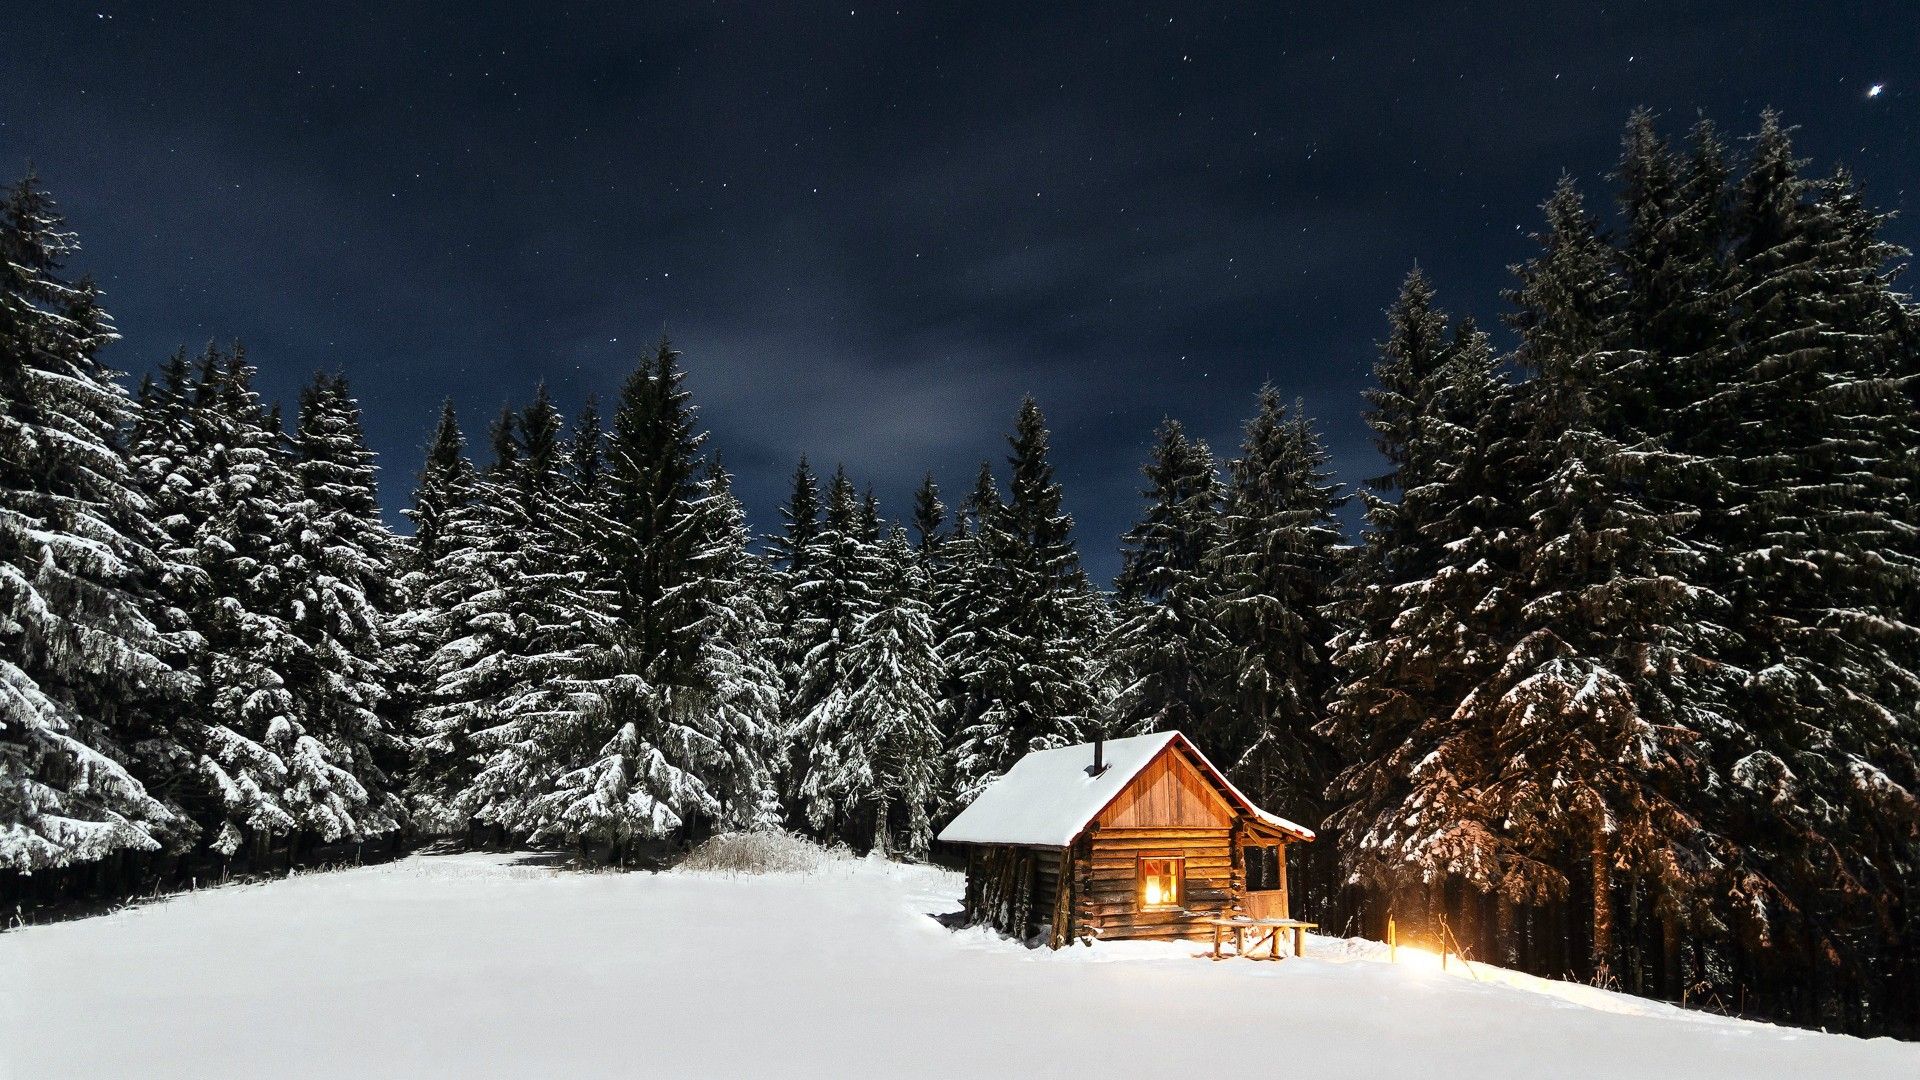 Các hình nền mùa đông đẹp lung linh sẽ khiến bạn mong muốn được đắm mình trong không khí se lạnh và tận hưởng những khoảnh khắc lãng mạn giữa tuyết trắng.